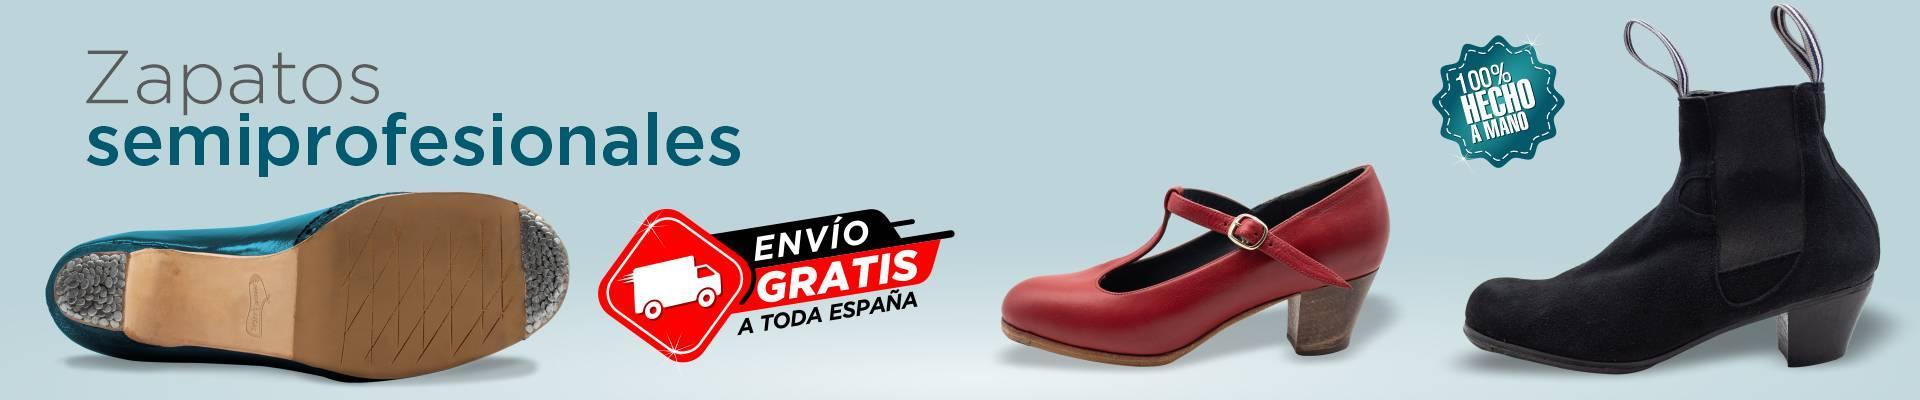 Zapatos de baile flamenco - Zapatos de flamenco de iniciación y  semiprofesionales